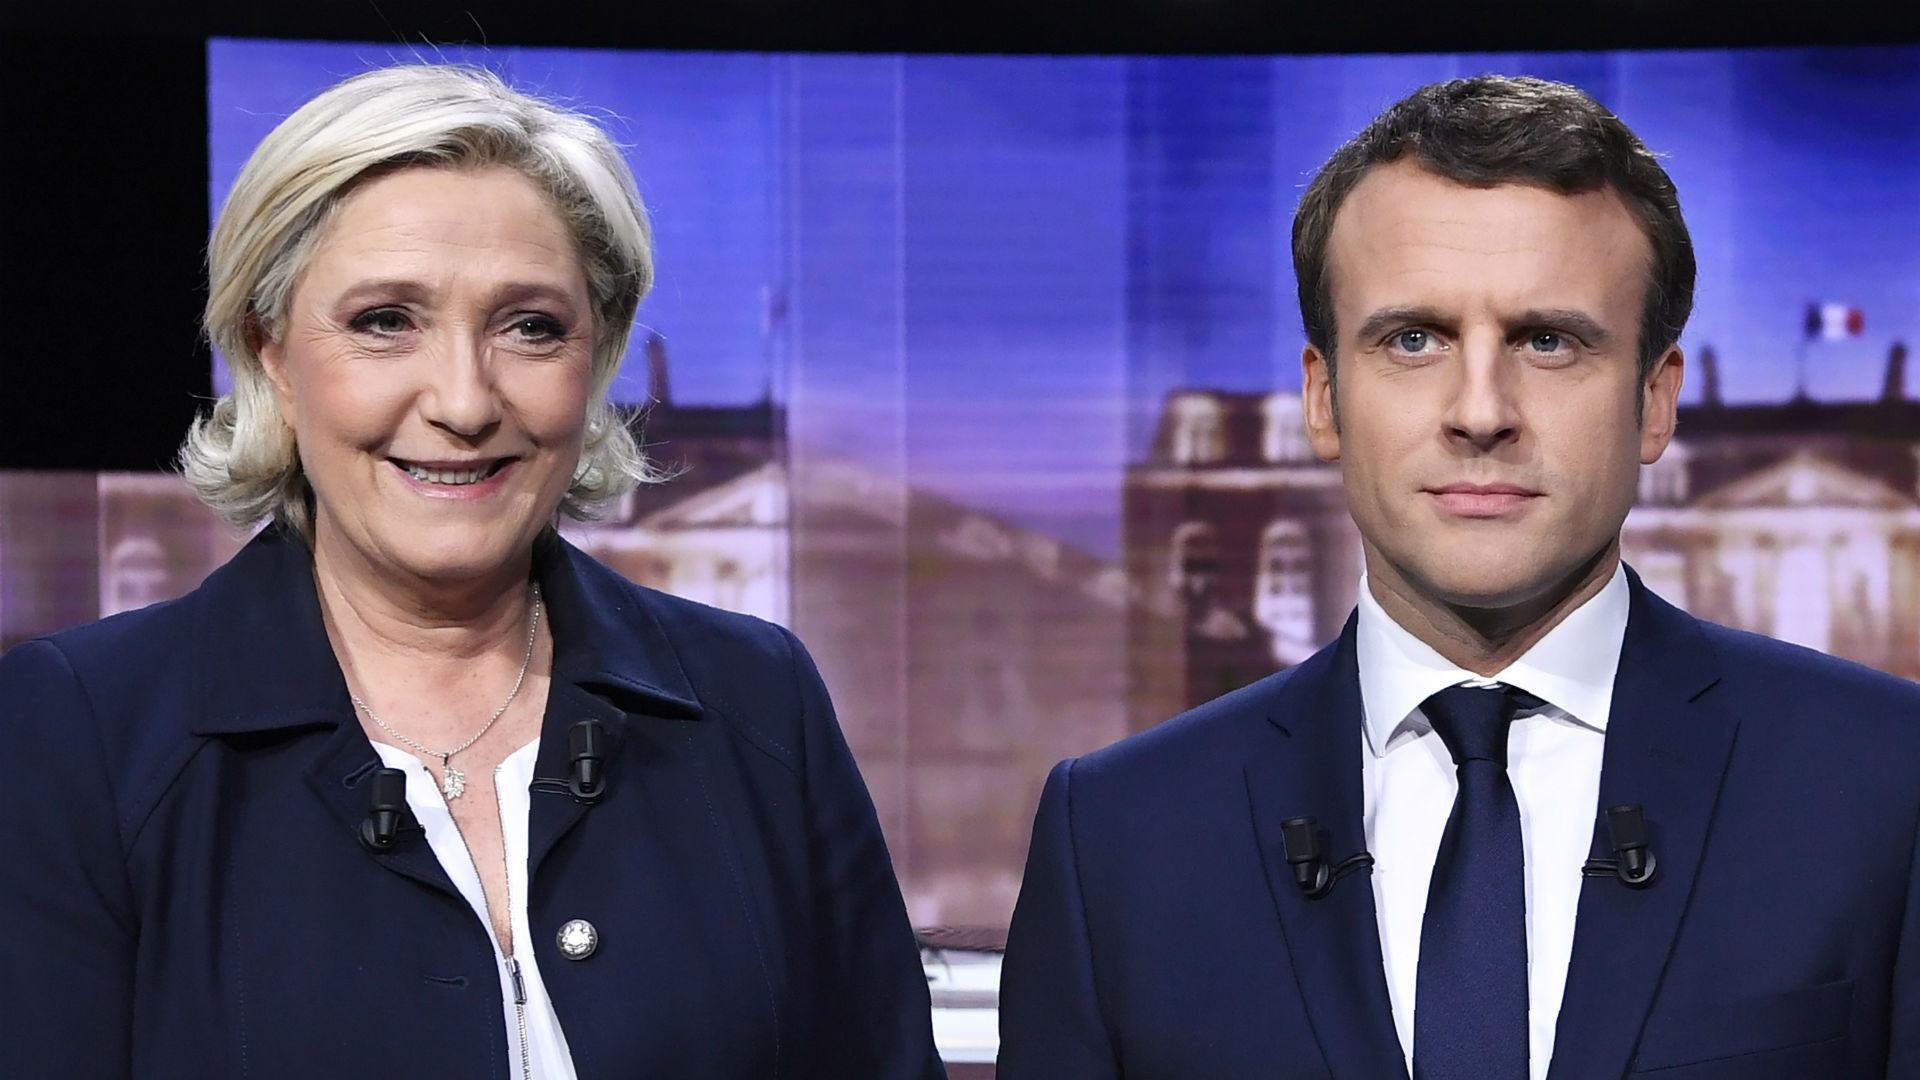 El último debate de Macron y Le Pen se llena de ataques directos y constantes